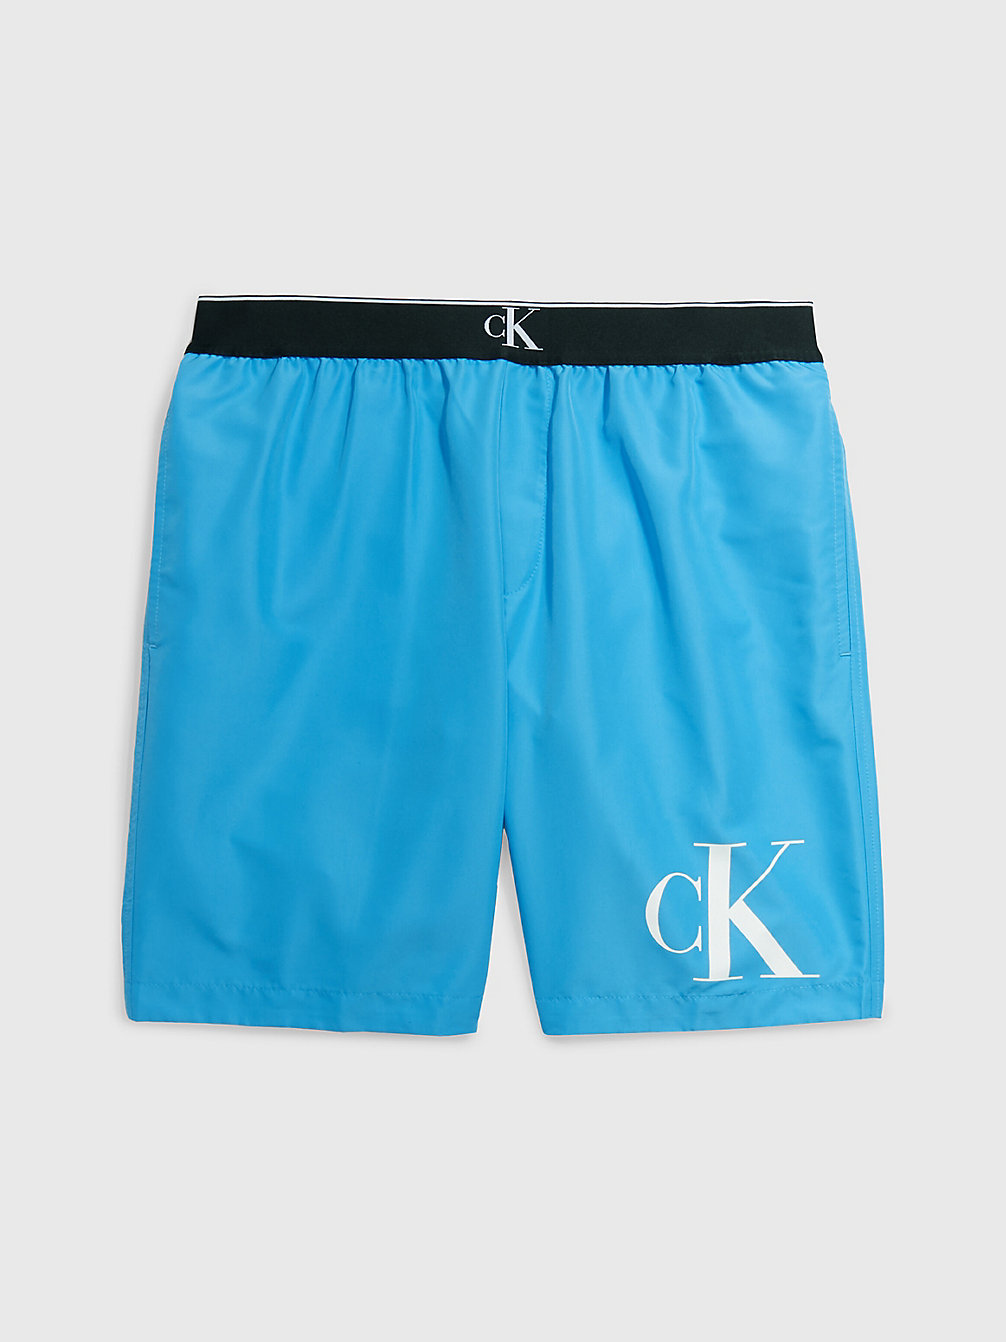 BLUE CRUSH Lange Badeshorts – CK Monogram undefined Herren Calvin Klein